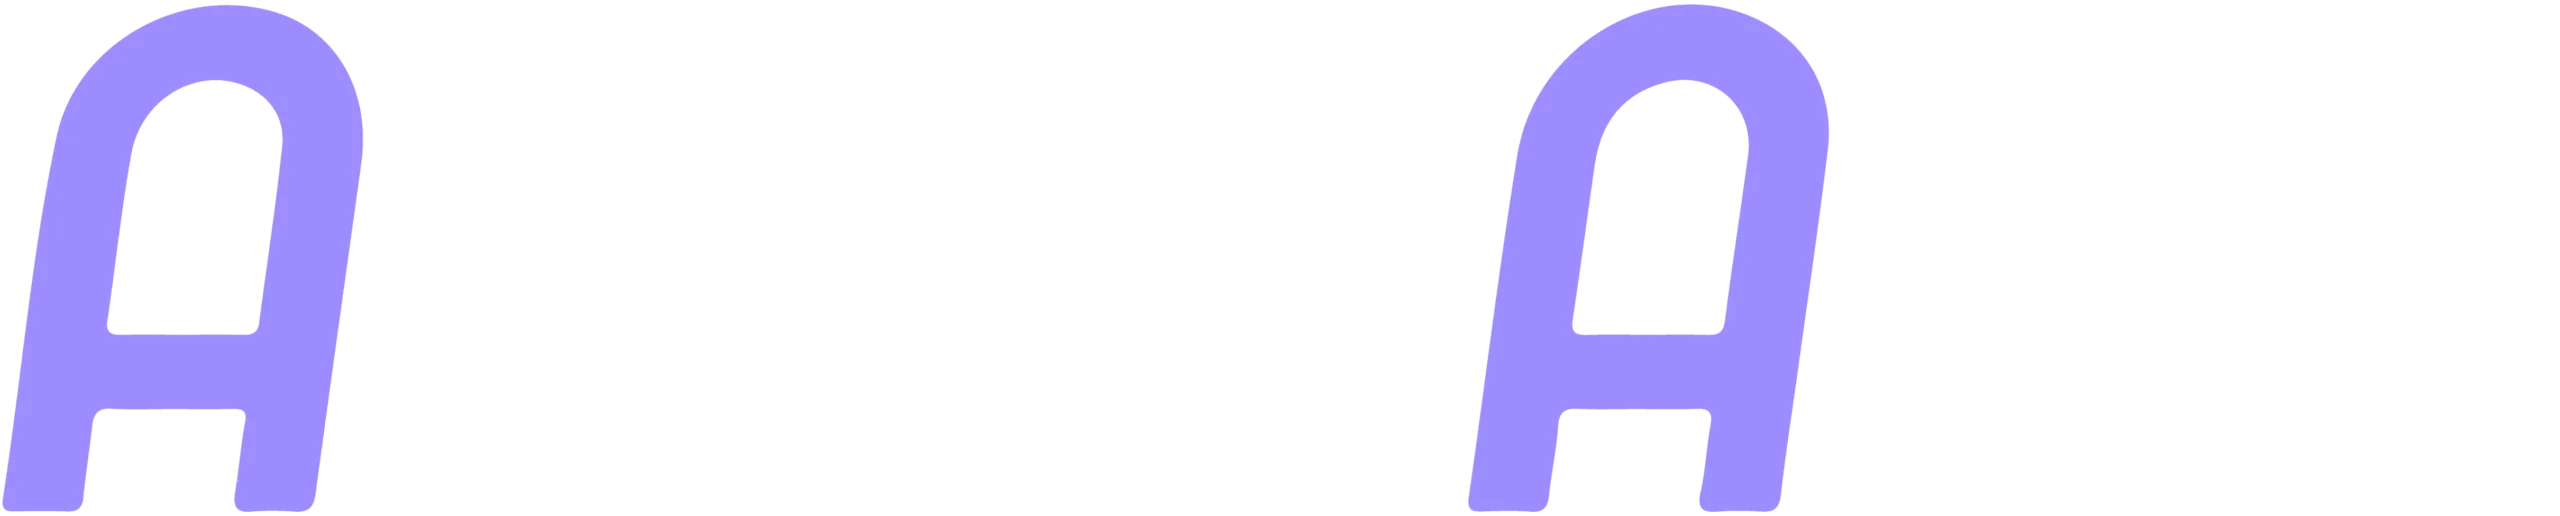 anasalali_logo